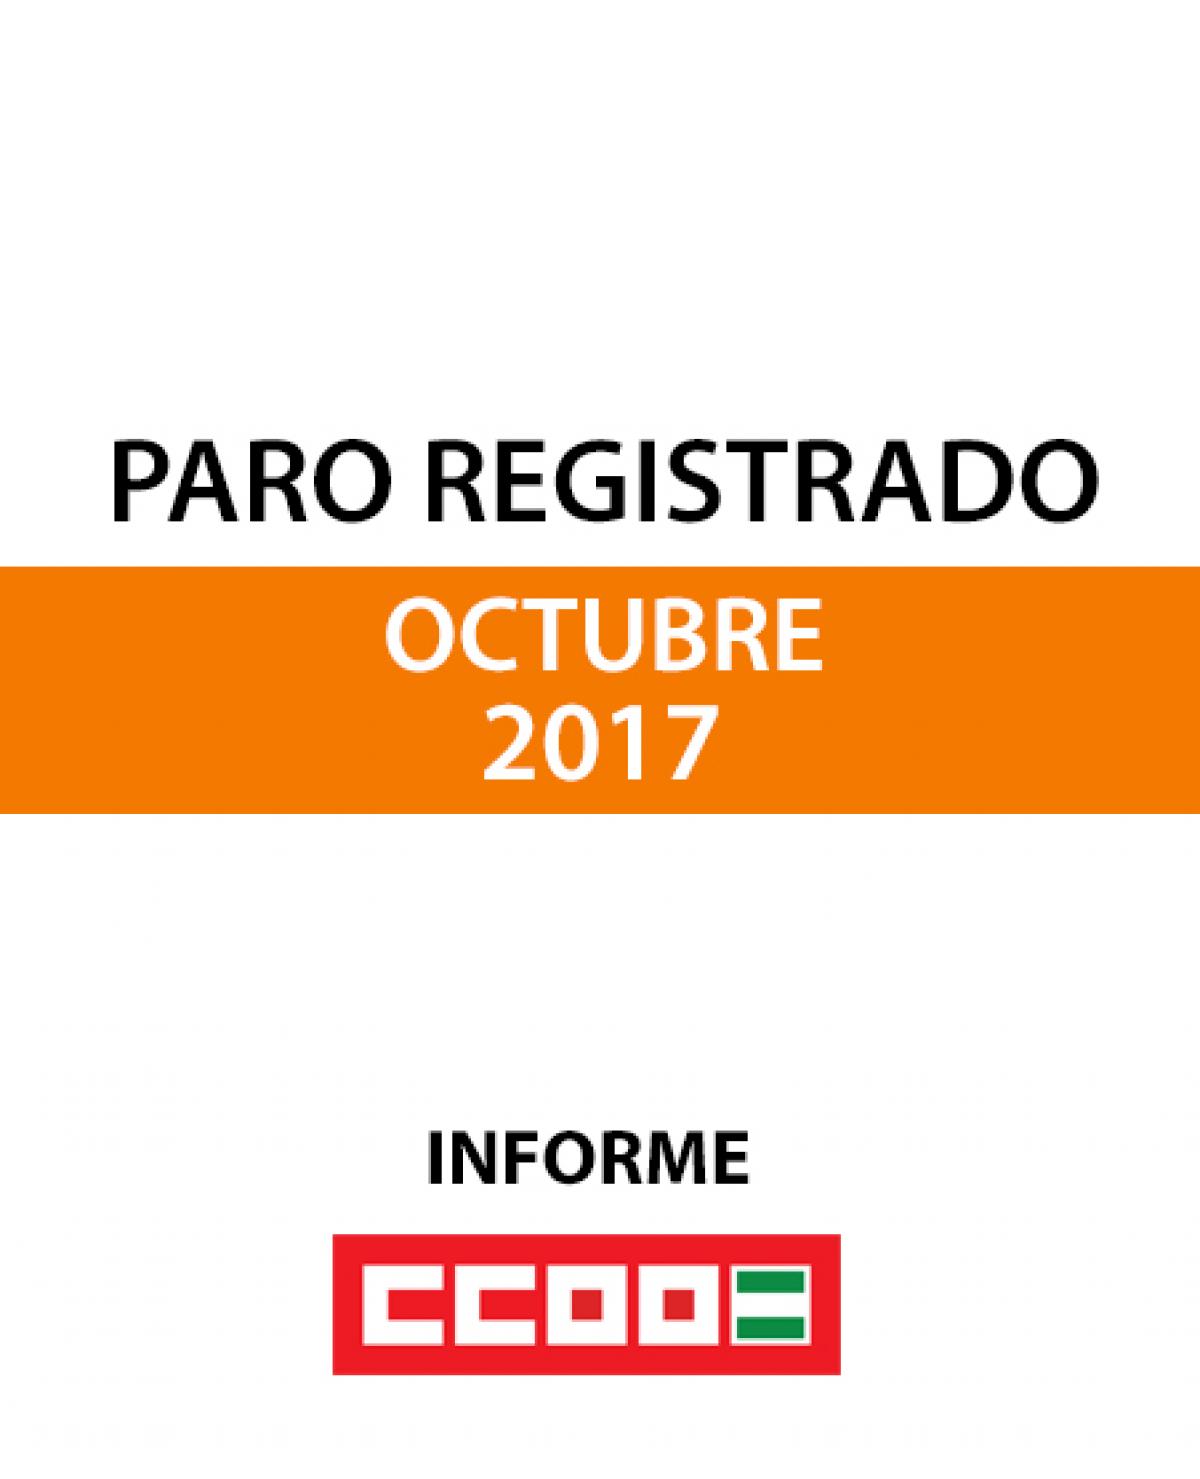 Paro registrado octubre 2017